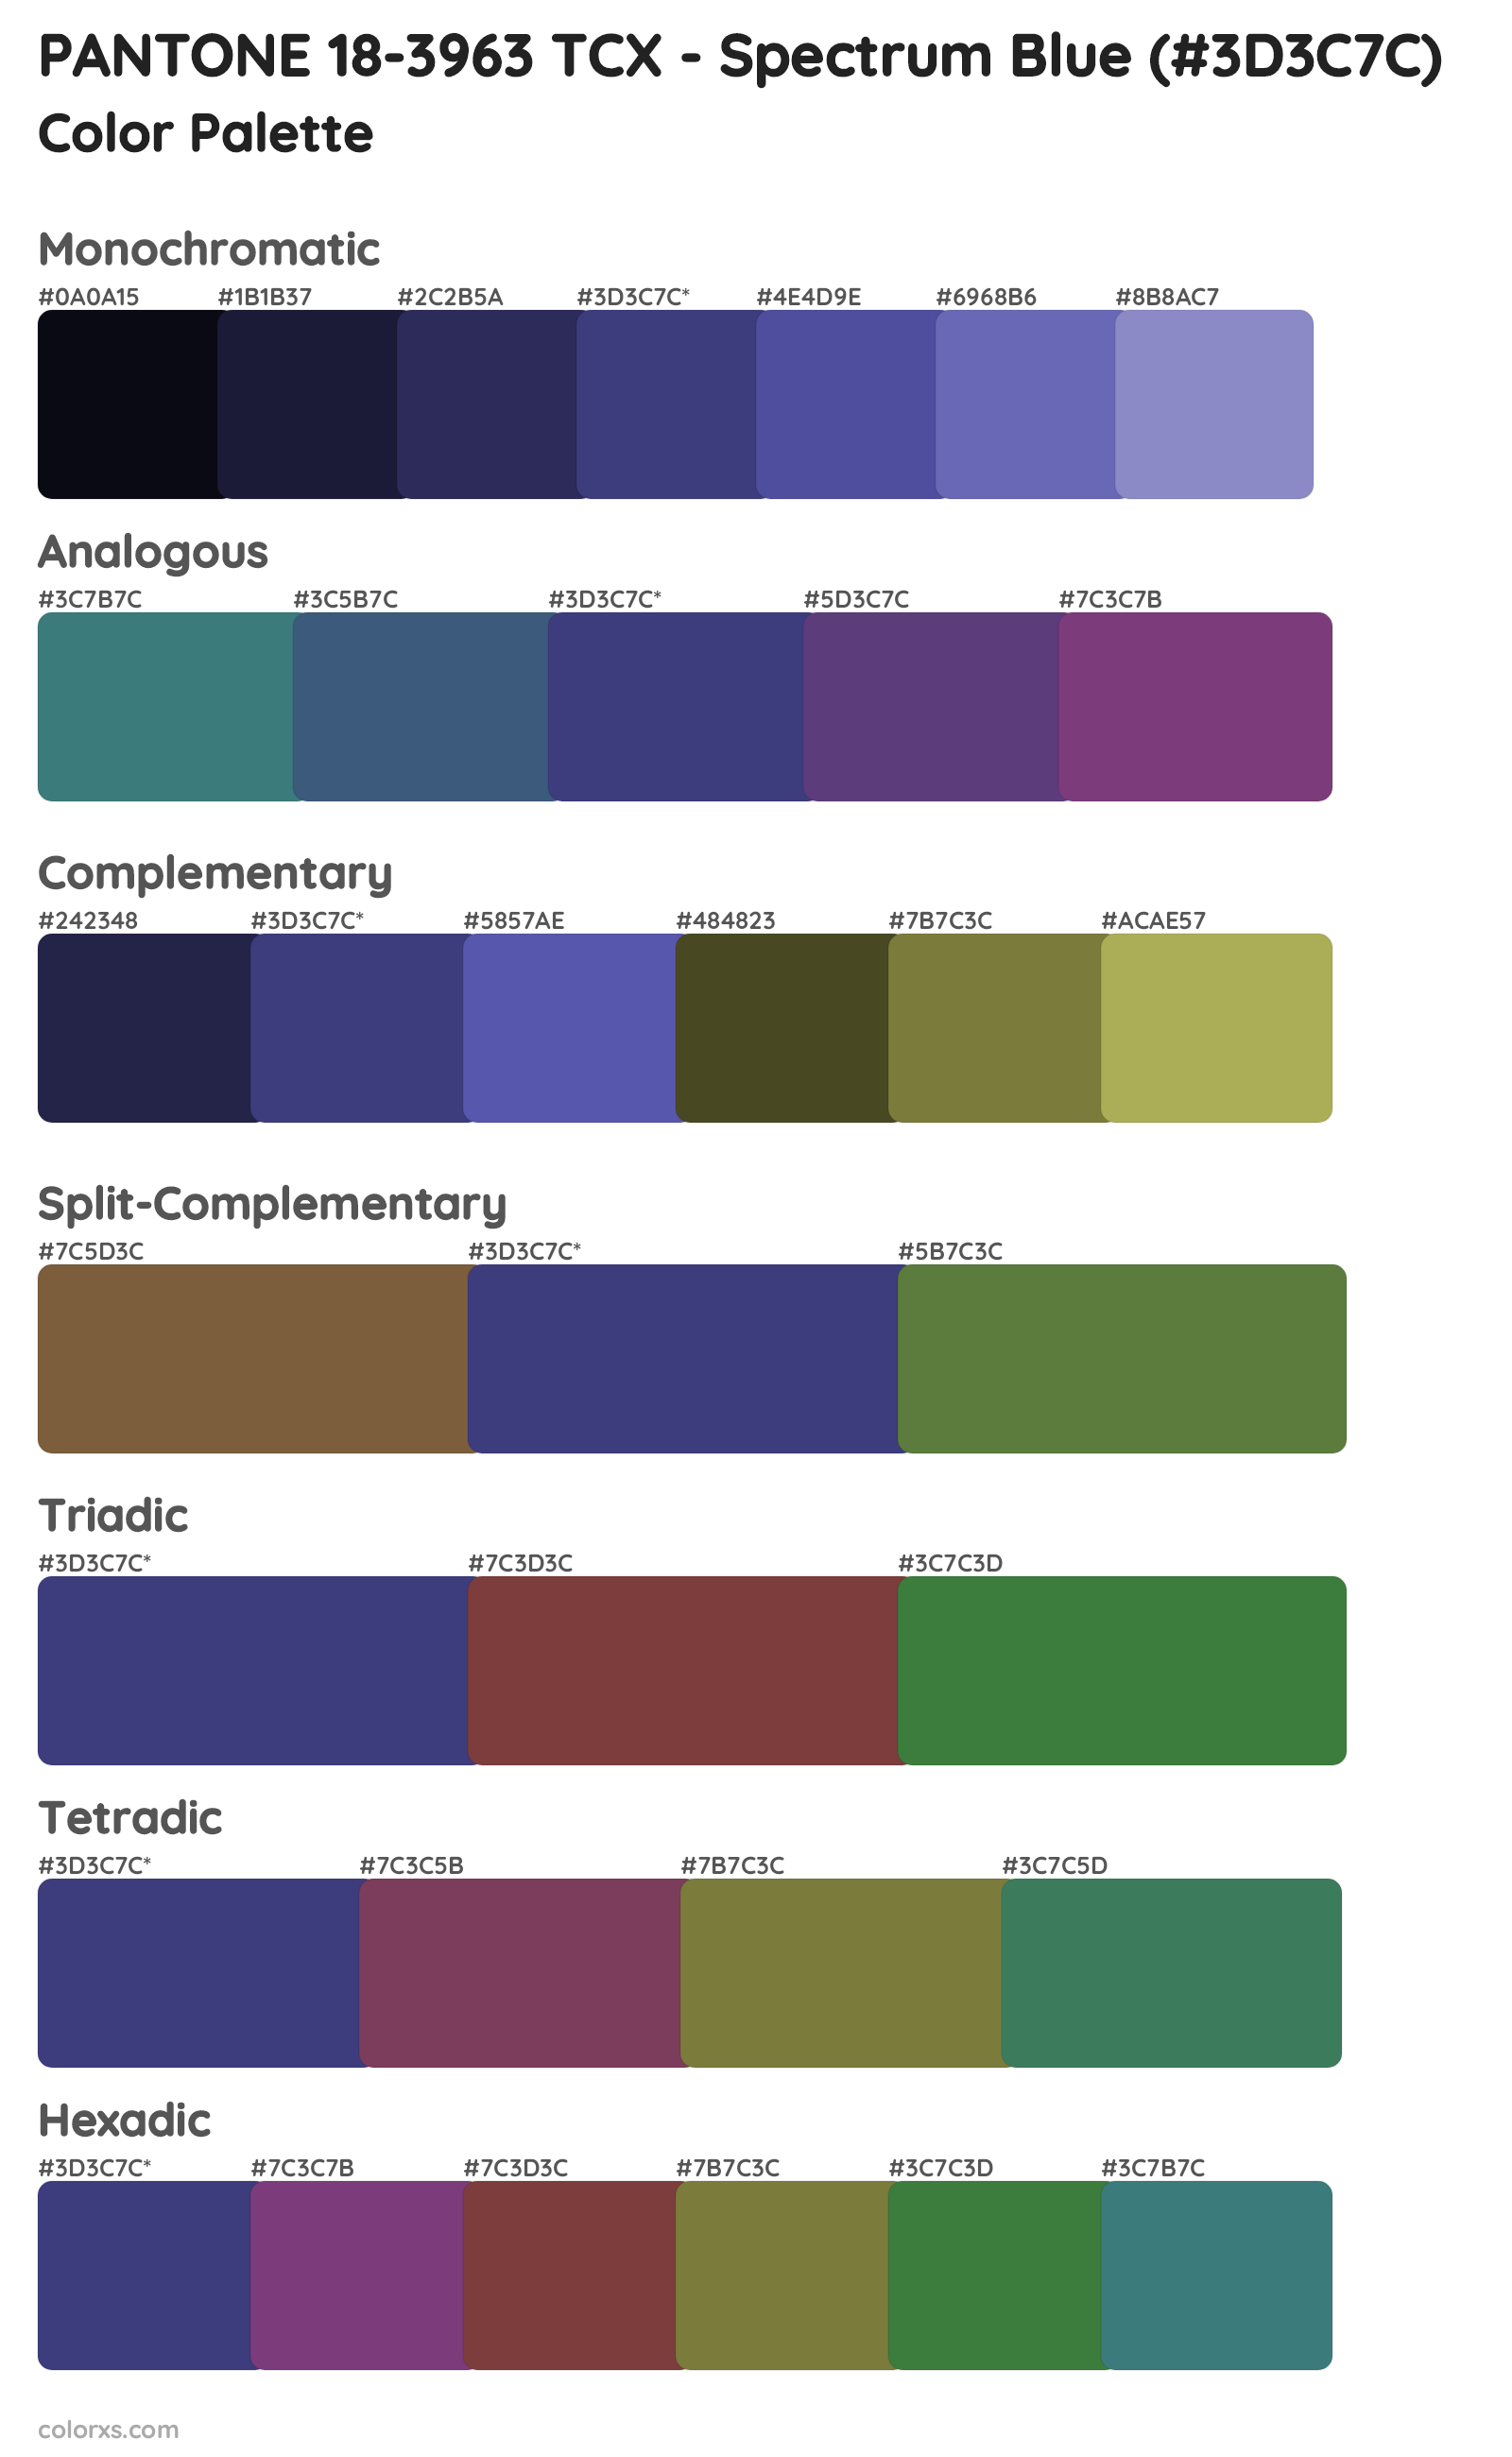 PANTONE 18-3963 TCX - Spectrum Blue Color Scheme Palettes